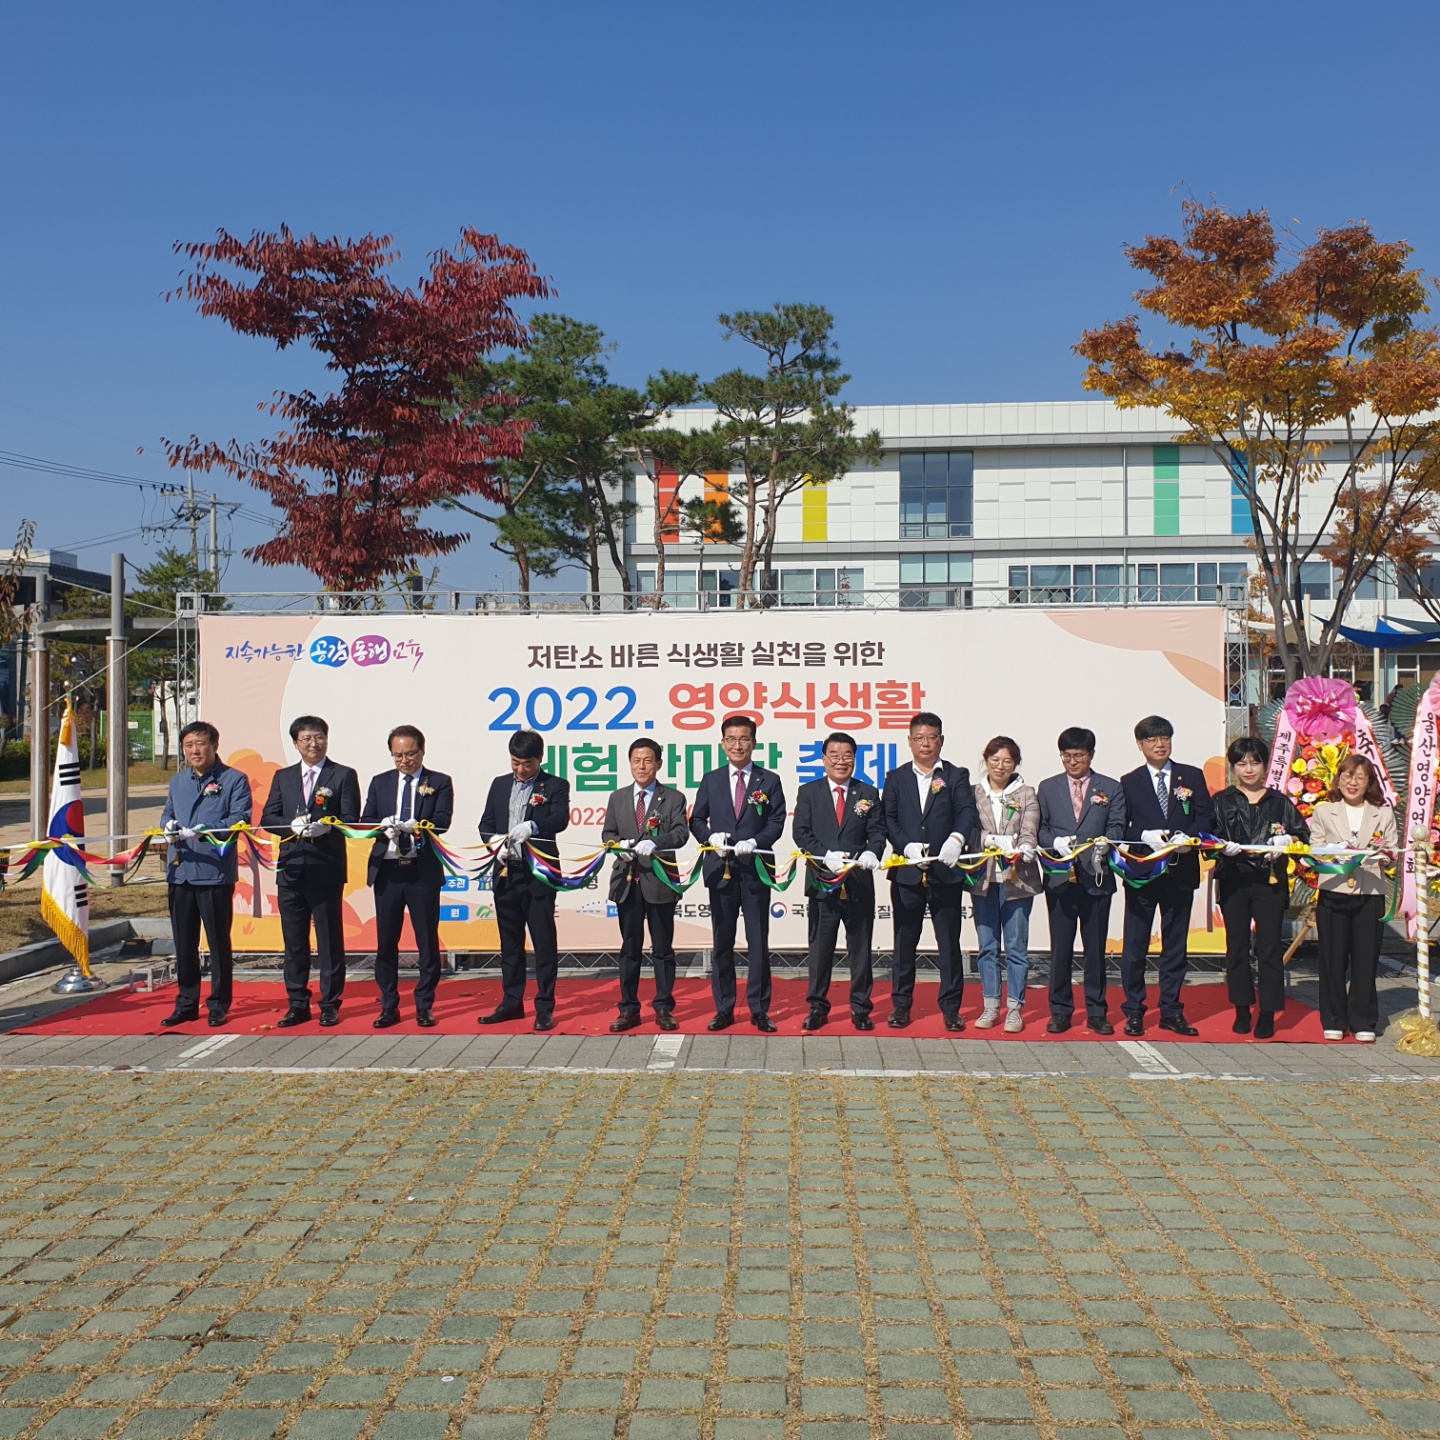 김현문‧유상용 의원, 2022. 영양식생활 체험 한마당 축제 참석 - 1